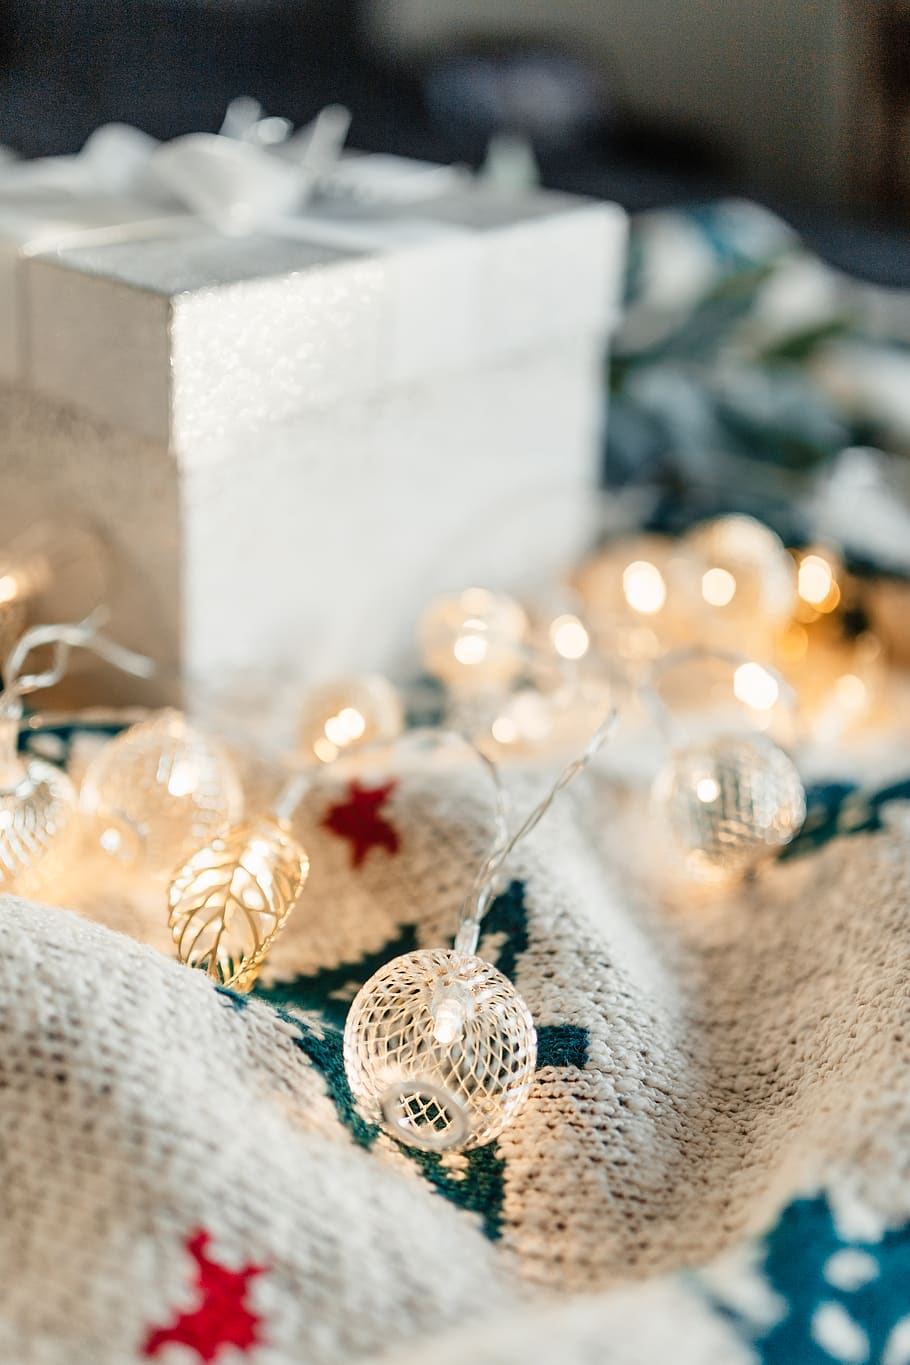 regalo de navidad, navidad, diciembre, invierno, manta, presente, blanco, decorativo, regalo, caja